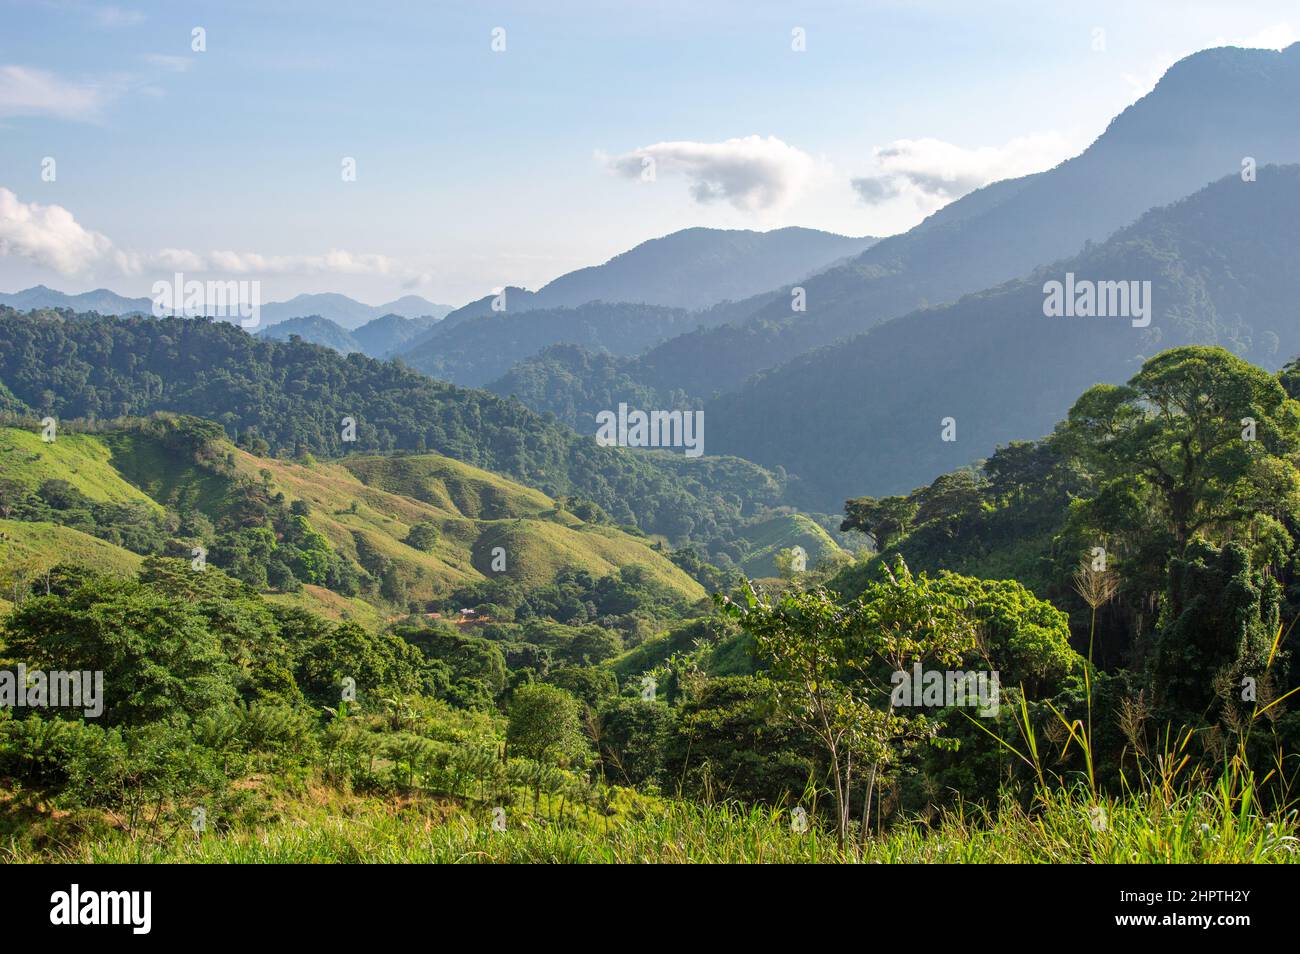 Vue sur le paysage de la jungle de la Sierra Nevada de Santa Marta, près de Lost City/Ciudad Perdida en Colombie Banque D'Images